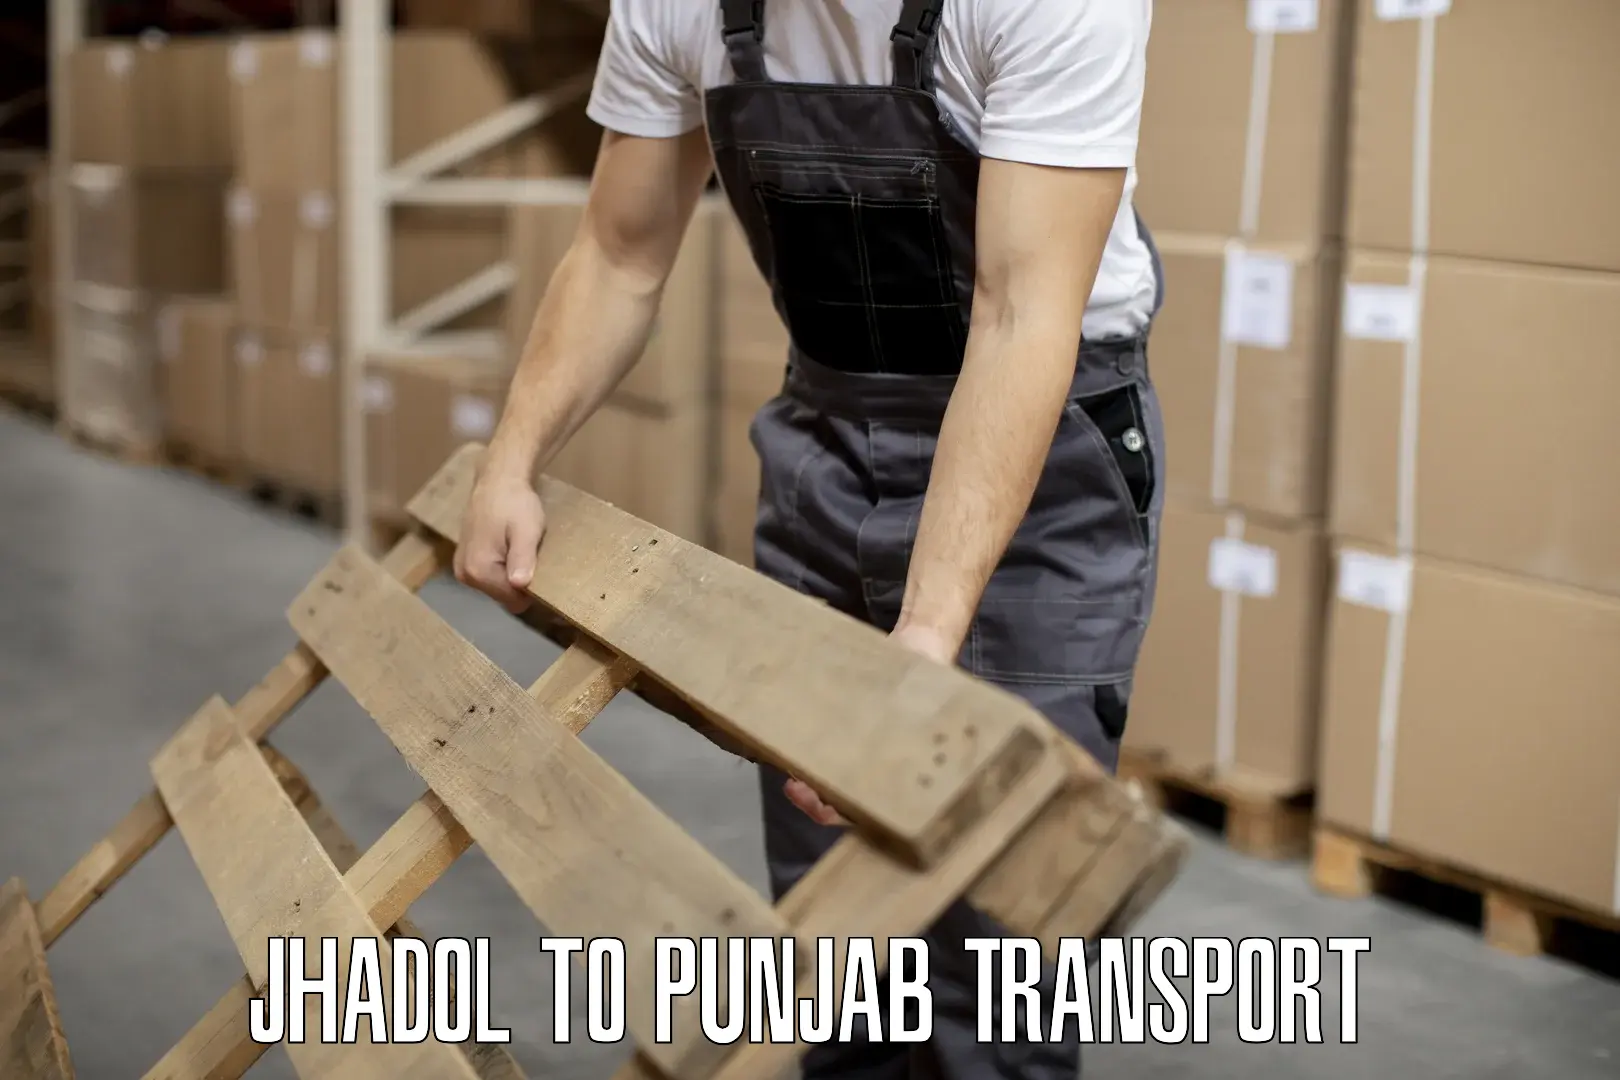 Transportation solution services Jhadol to Dinanagar